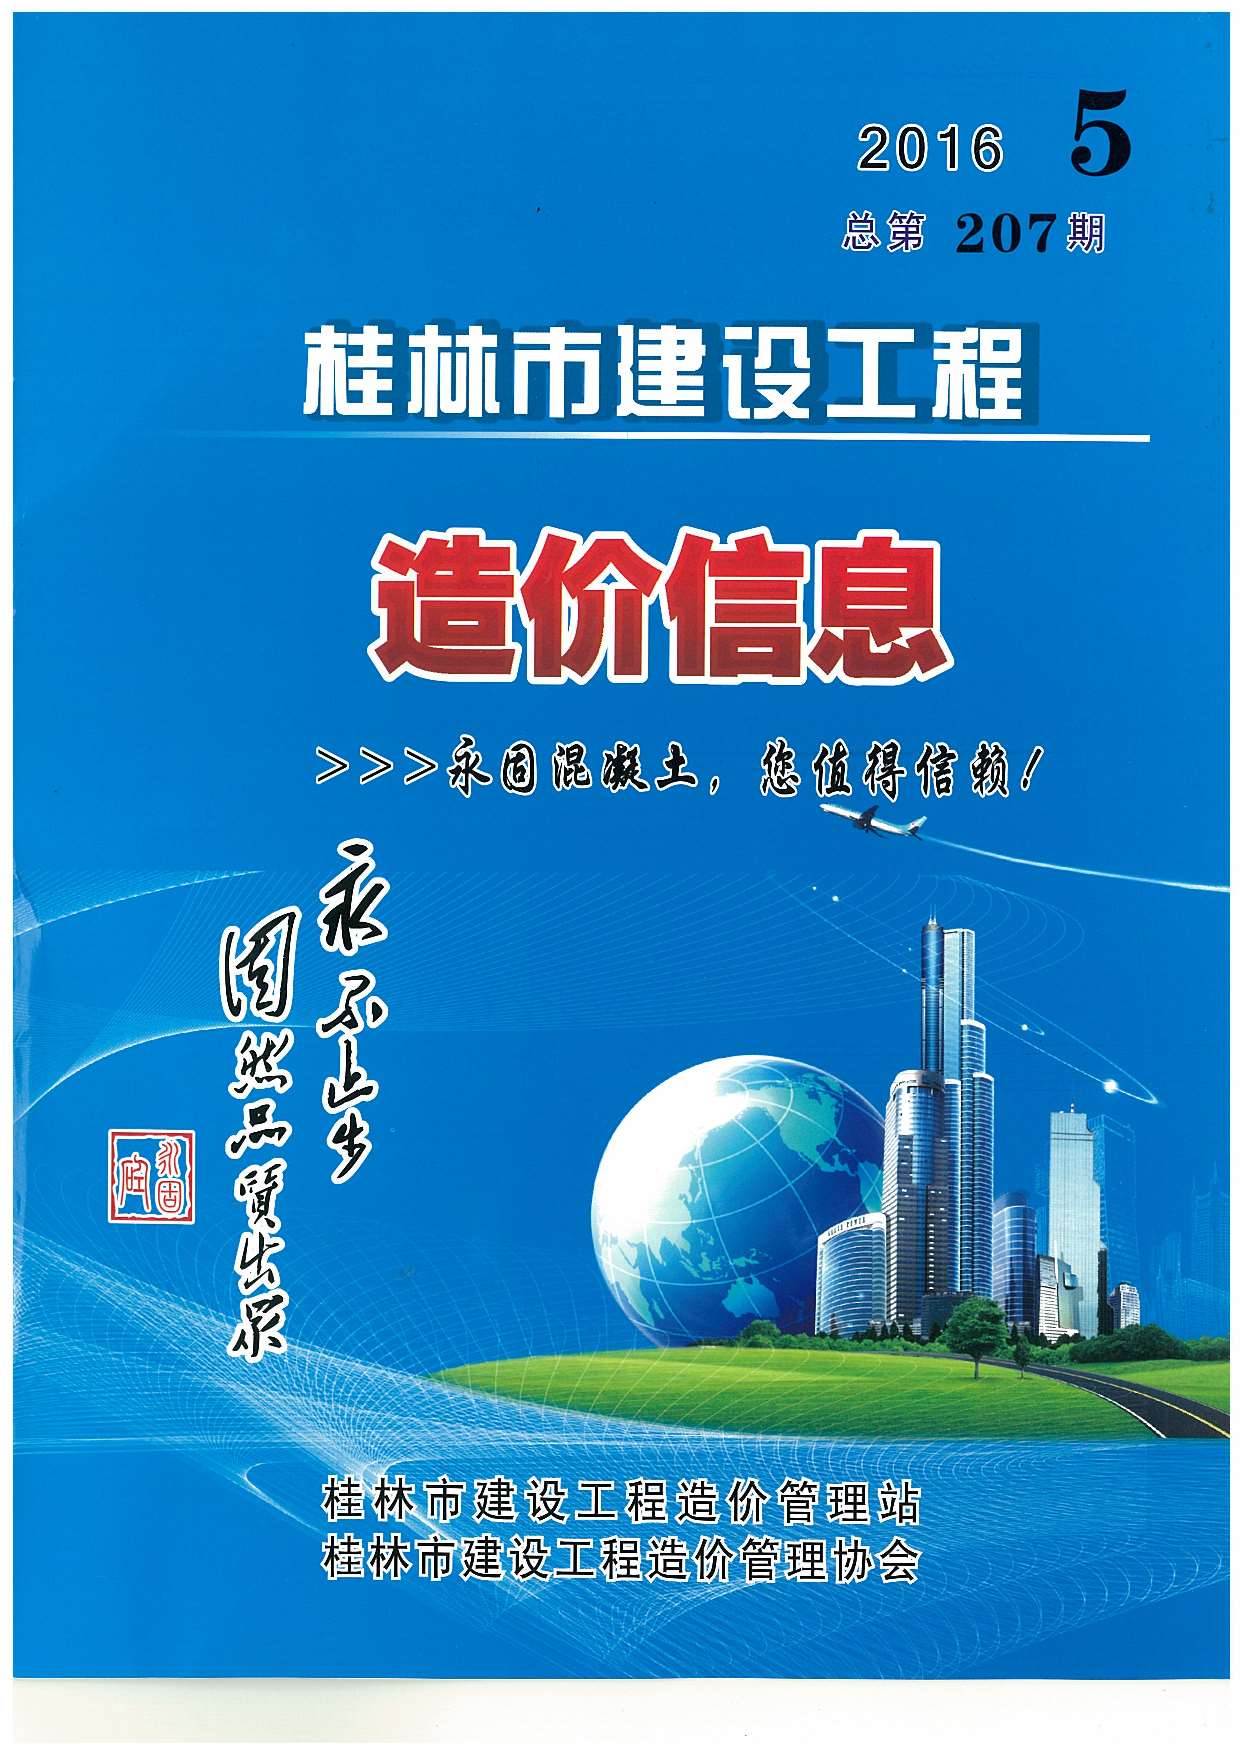 桂林市2016年5月建设工程造价信息造价库信息价